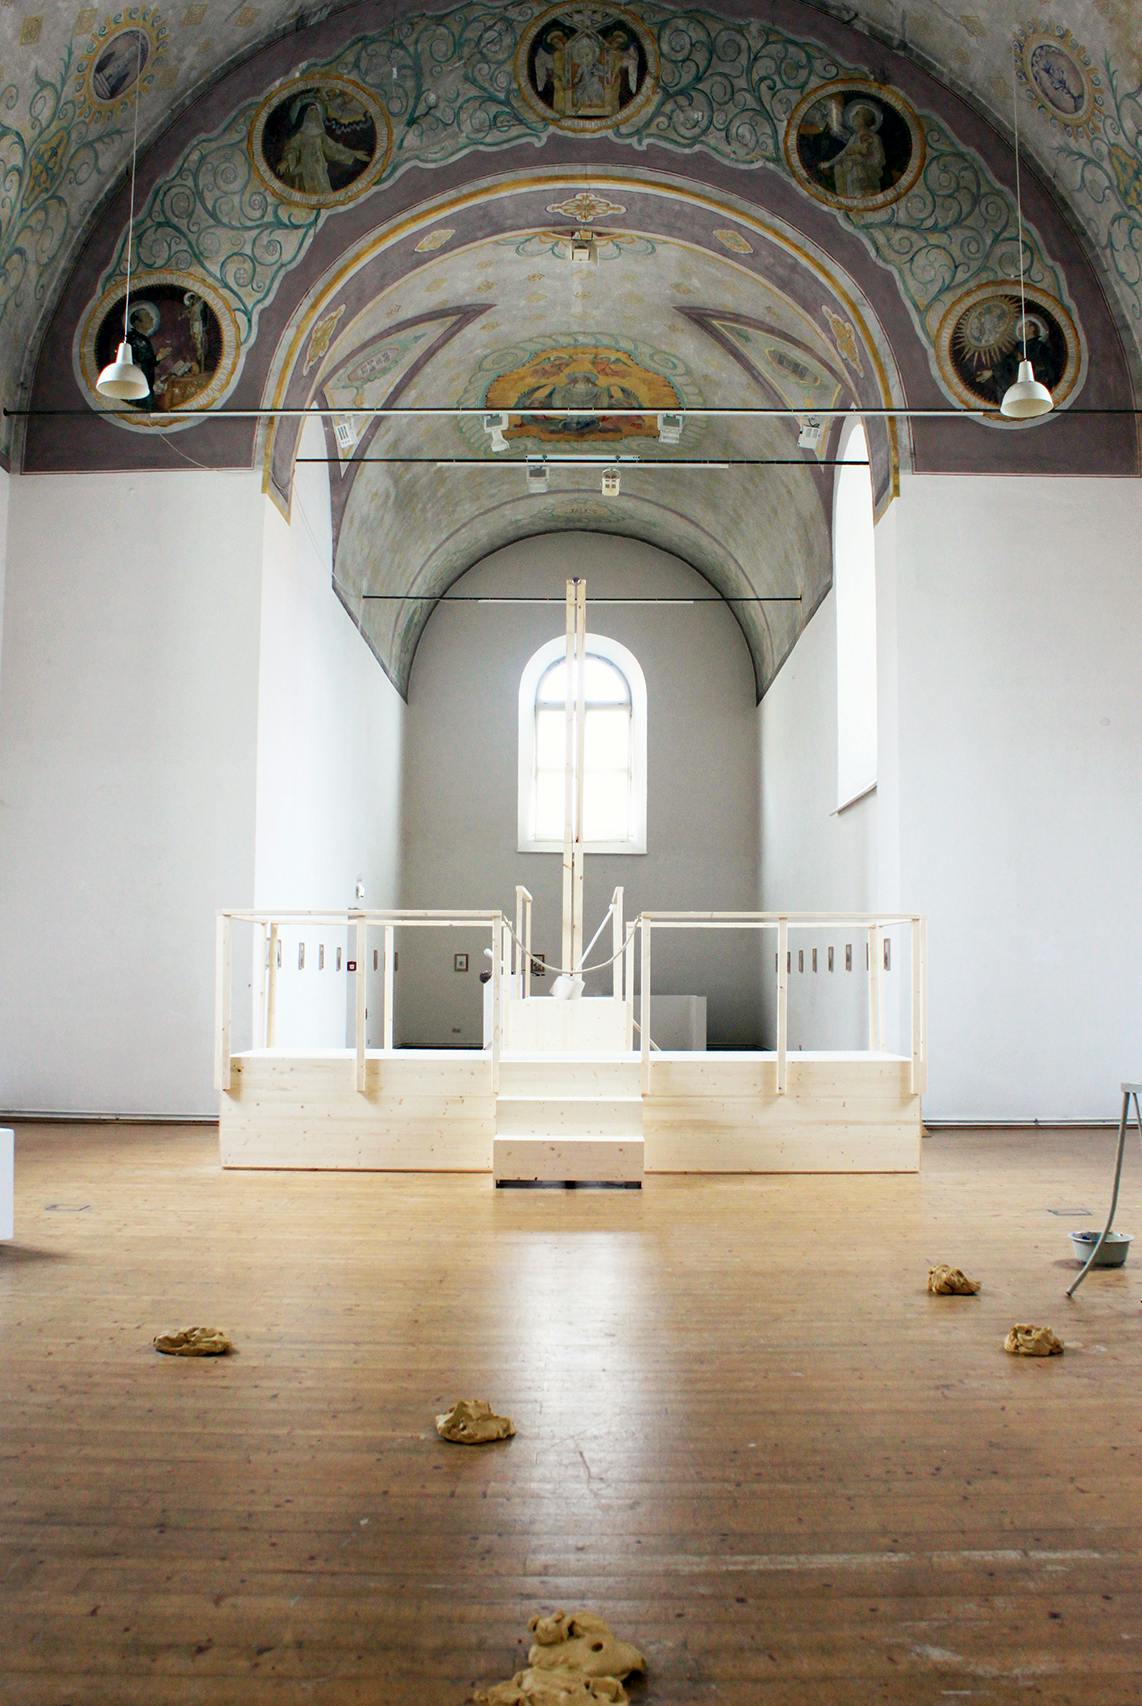 Meisterstücke und Kunst für Kirche
Alexi Tsioris